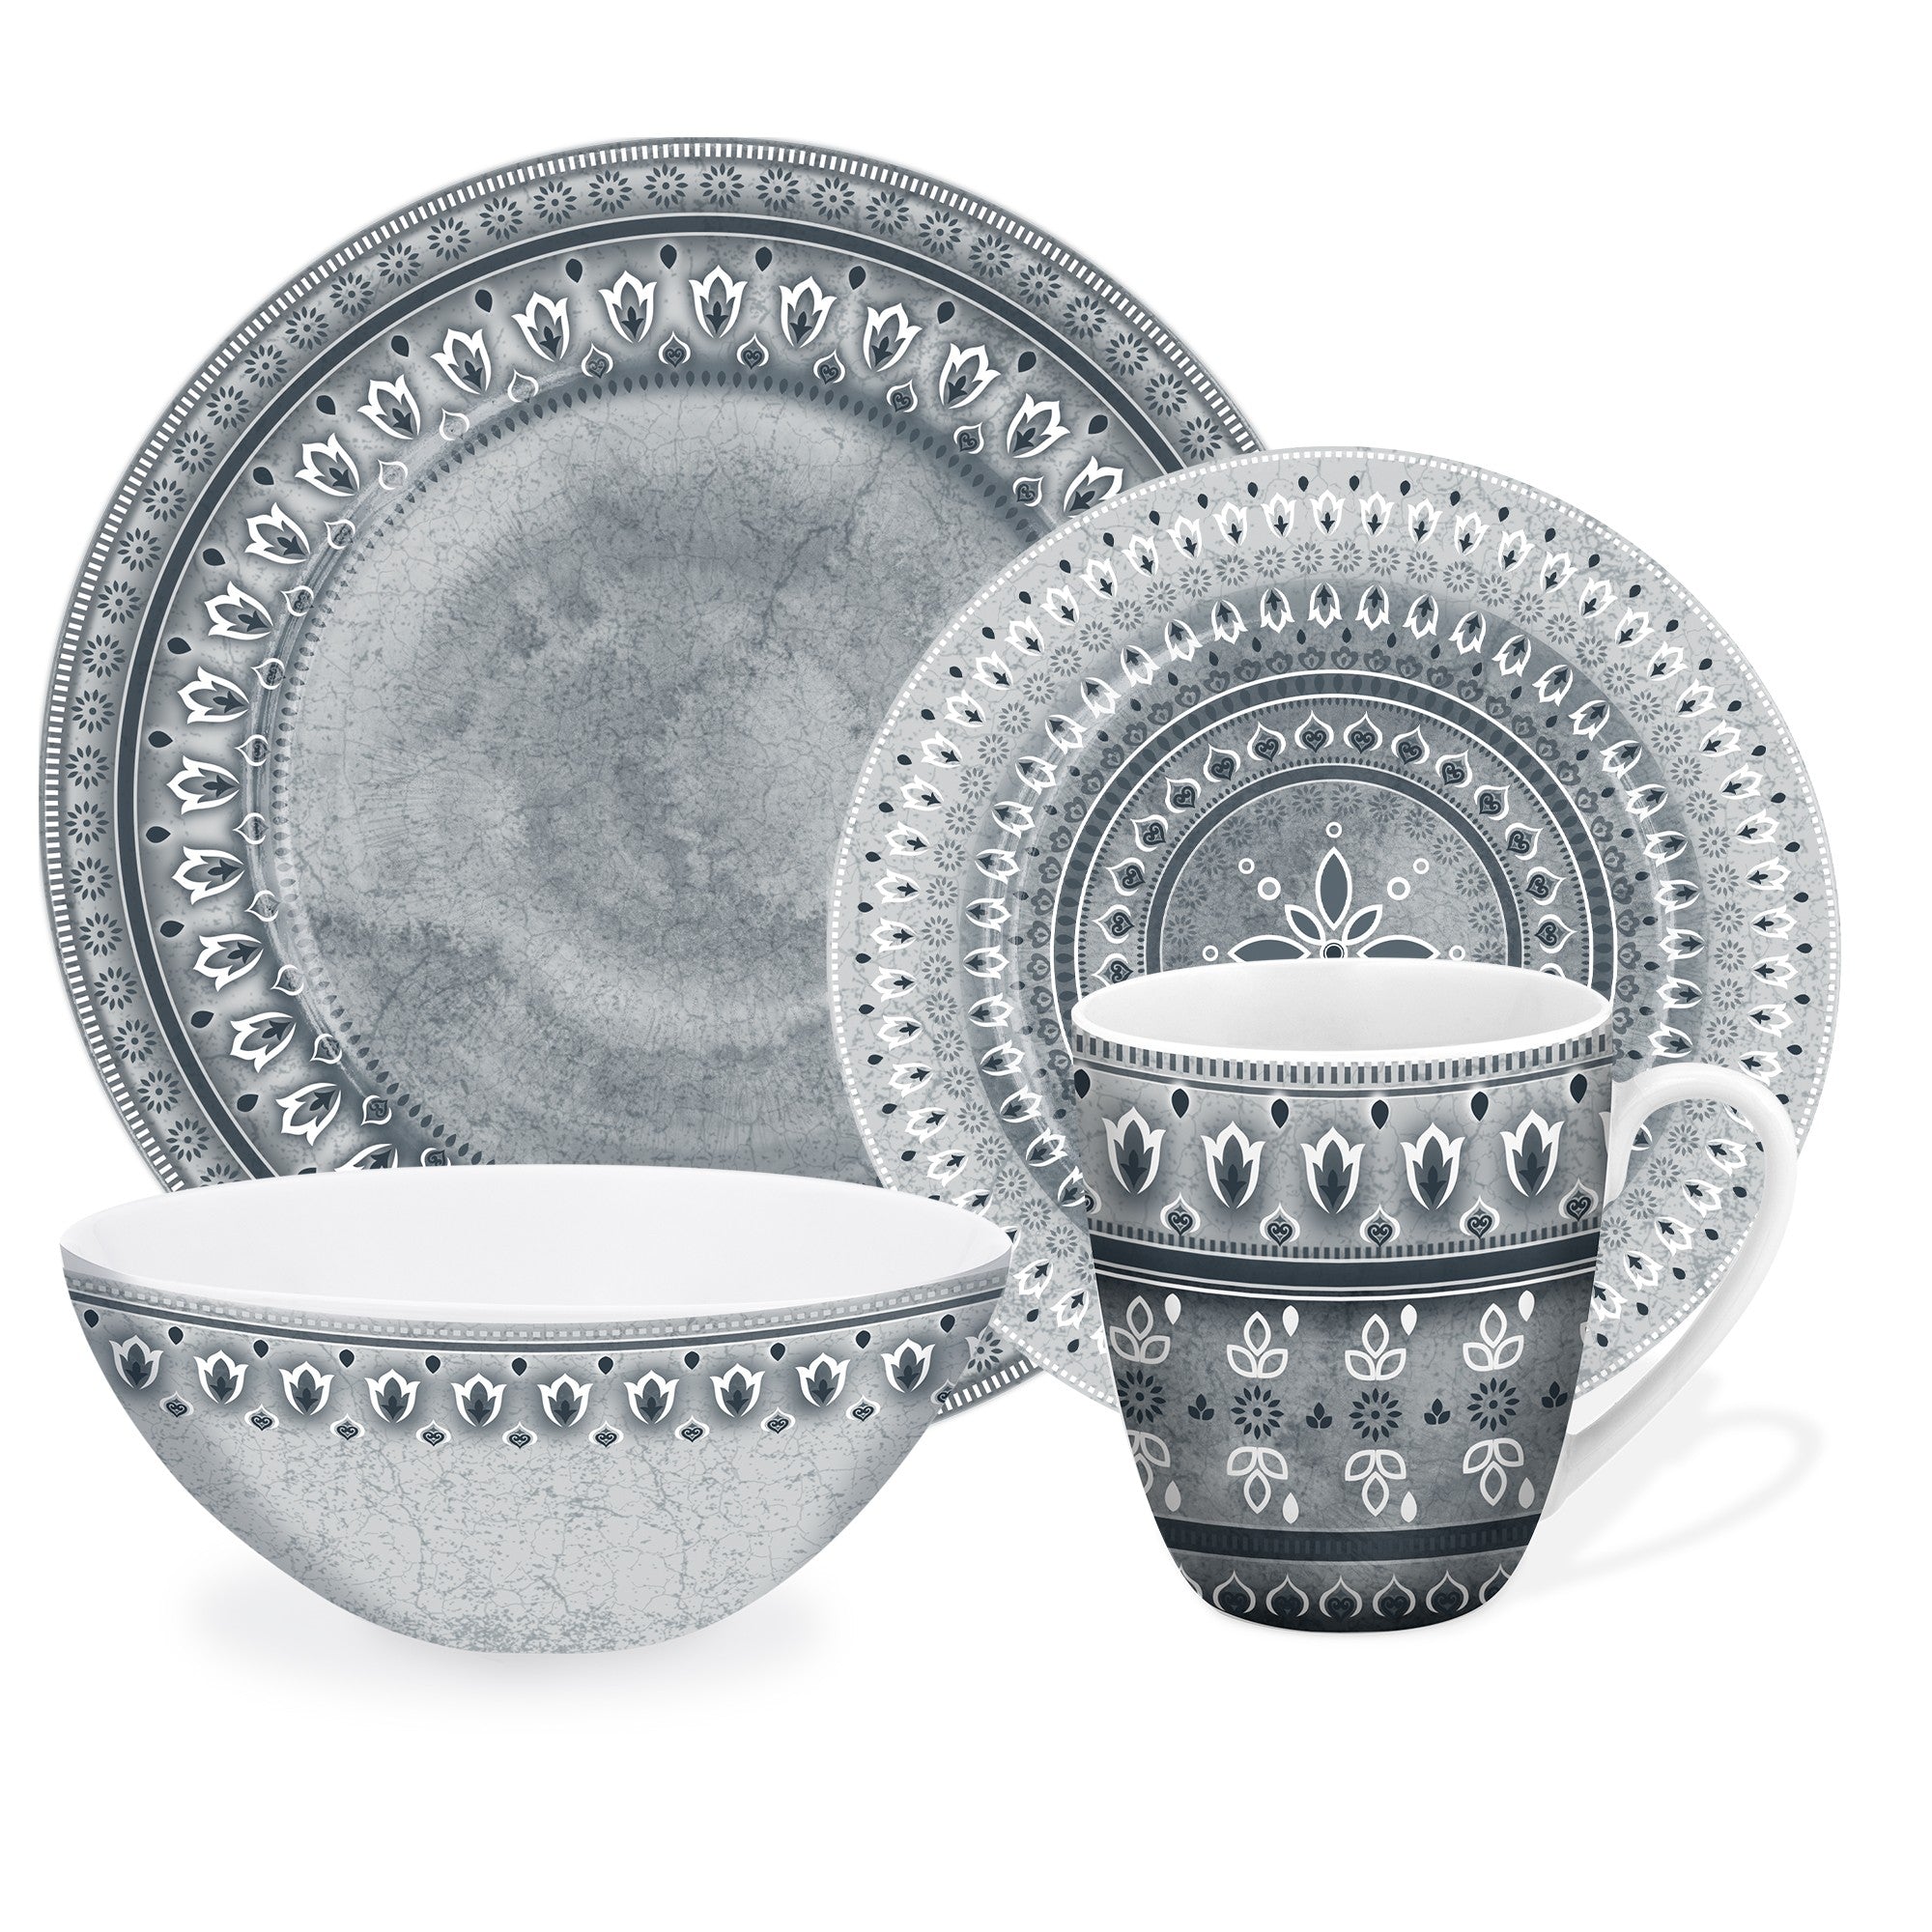 title:Safdie & Co. Luxury Premium Porcelain Dinnerset 16 Piece Set Santa Fe;color:Multi